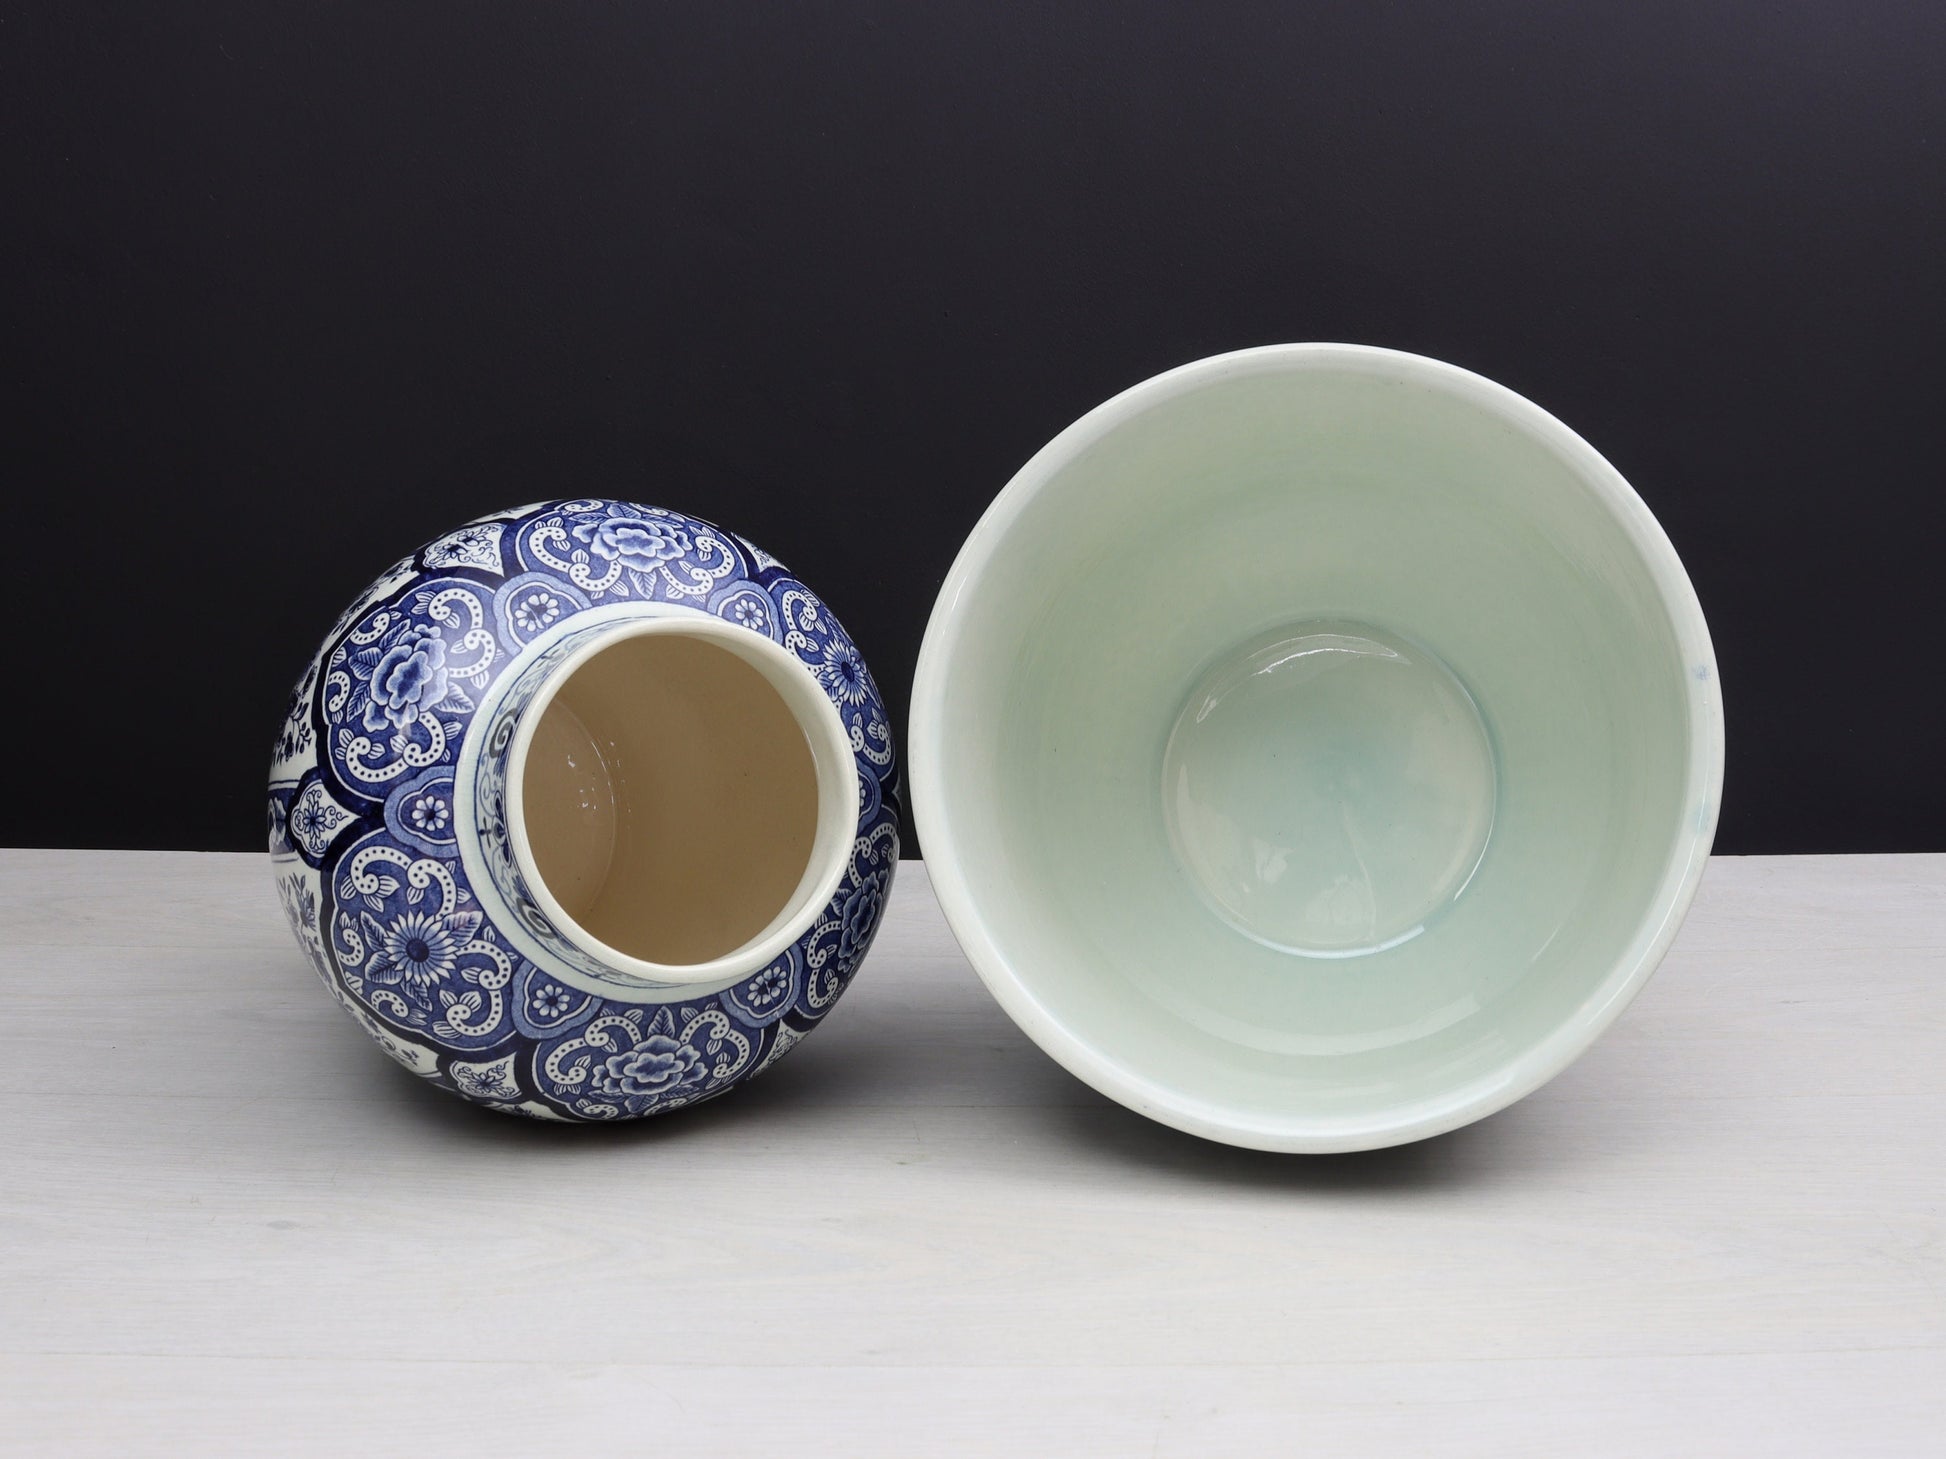 Delft Blue and White Vase & Plant Holder | Delftware Decorative Vase-Planter | Vintage Home Decor